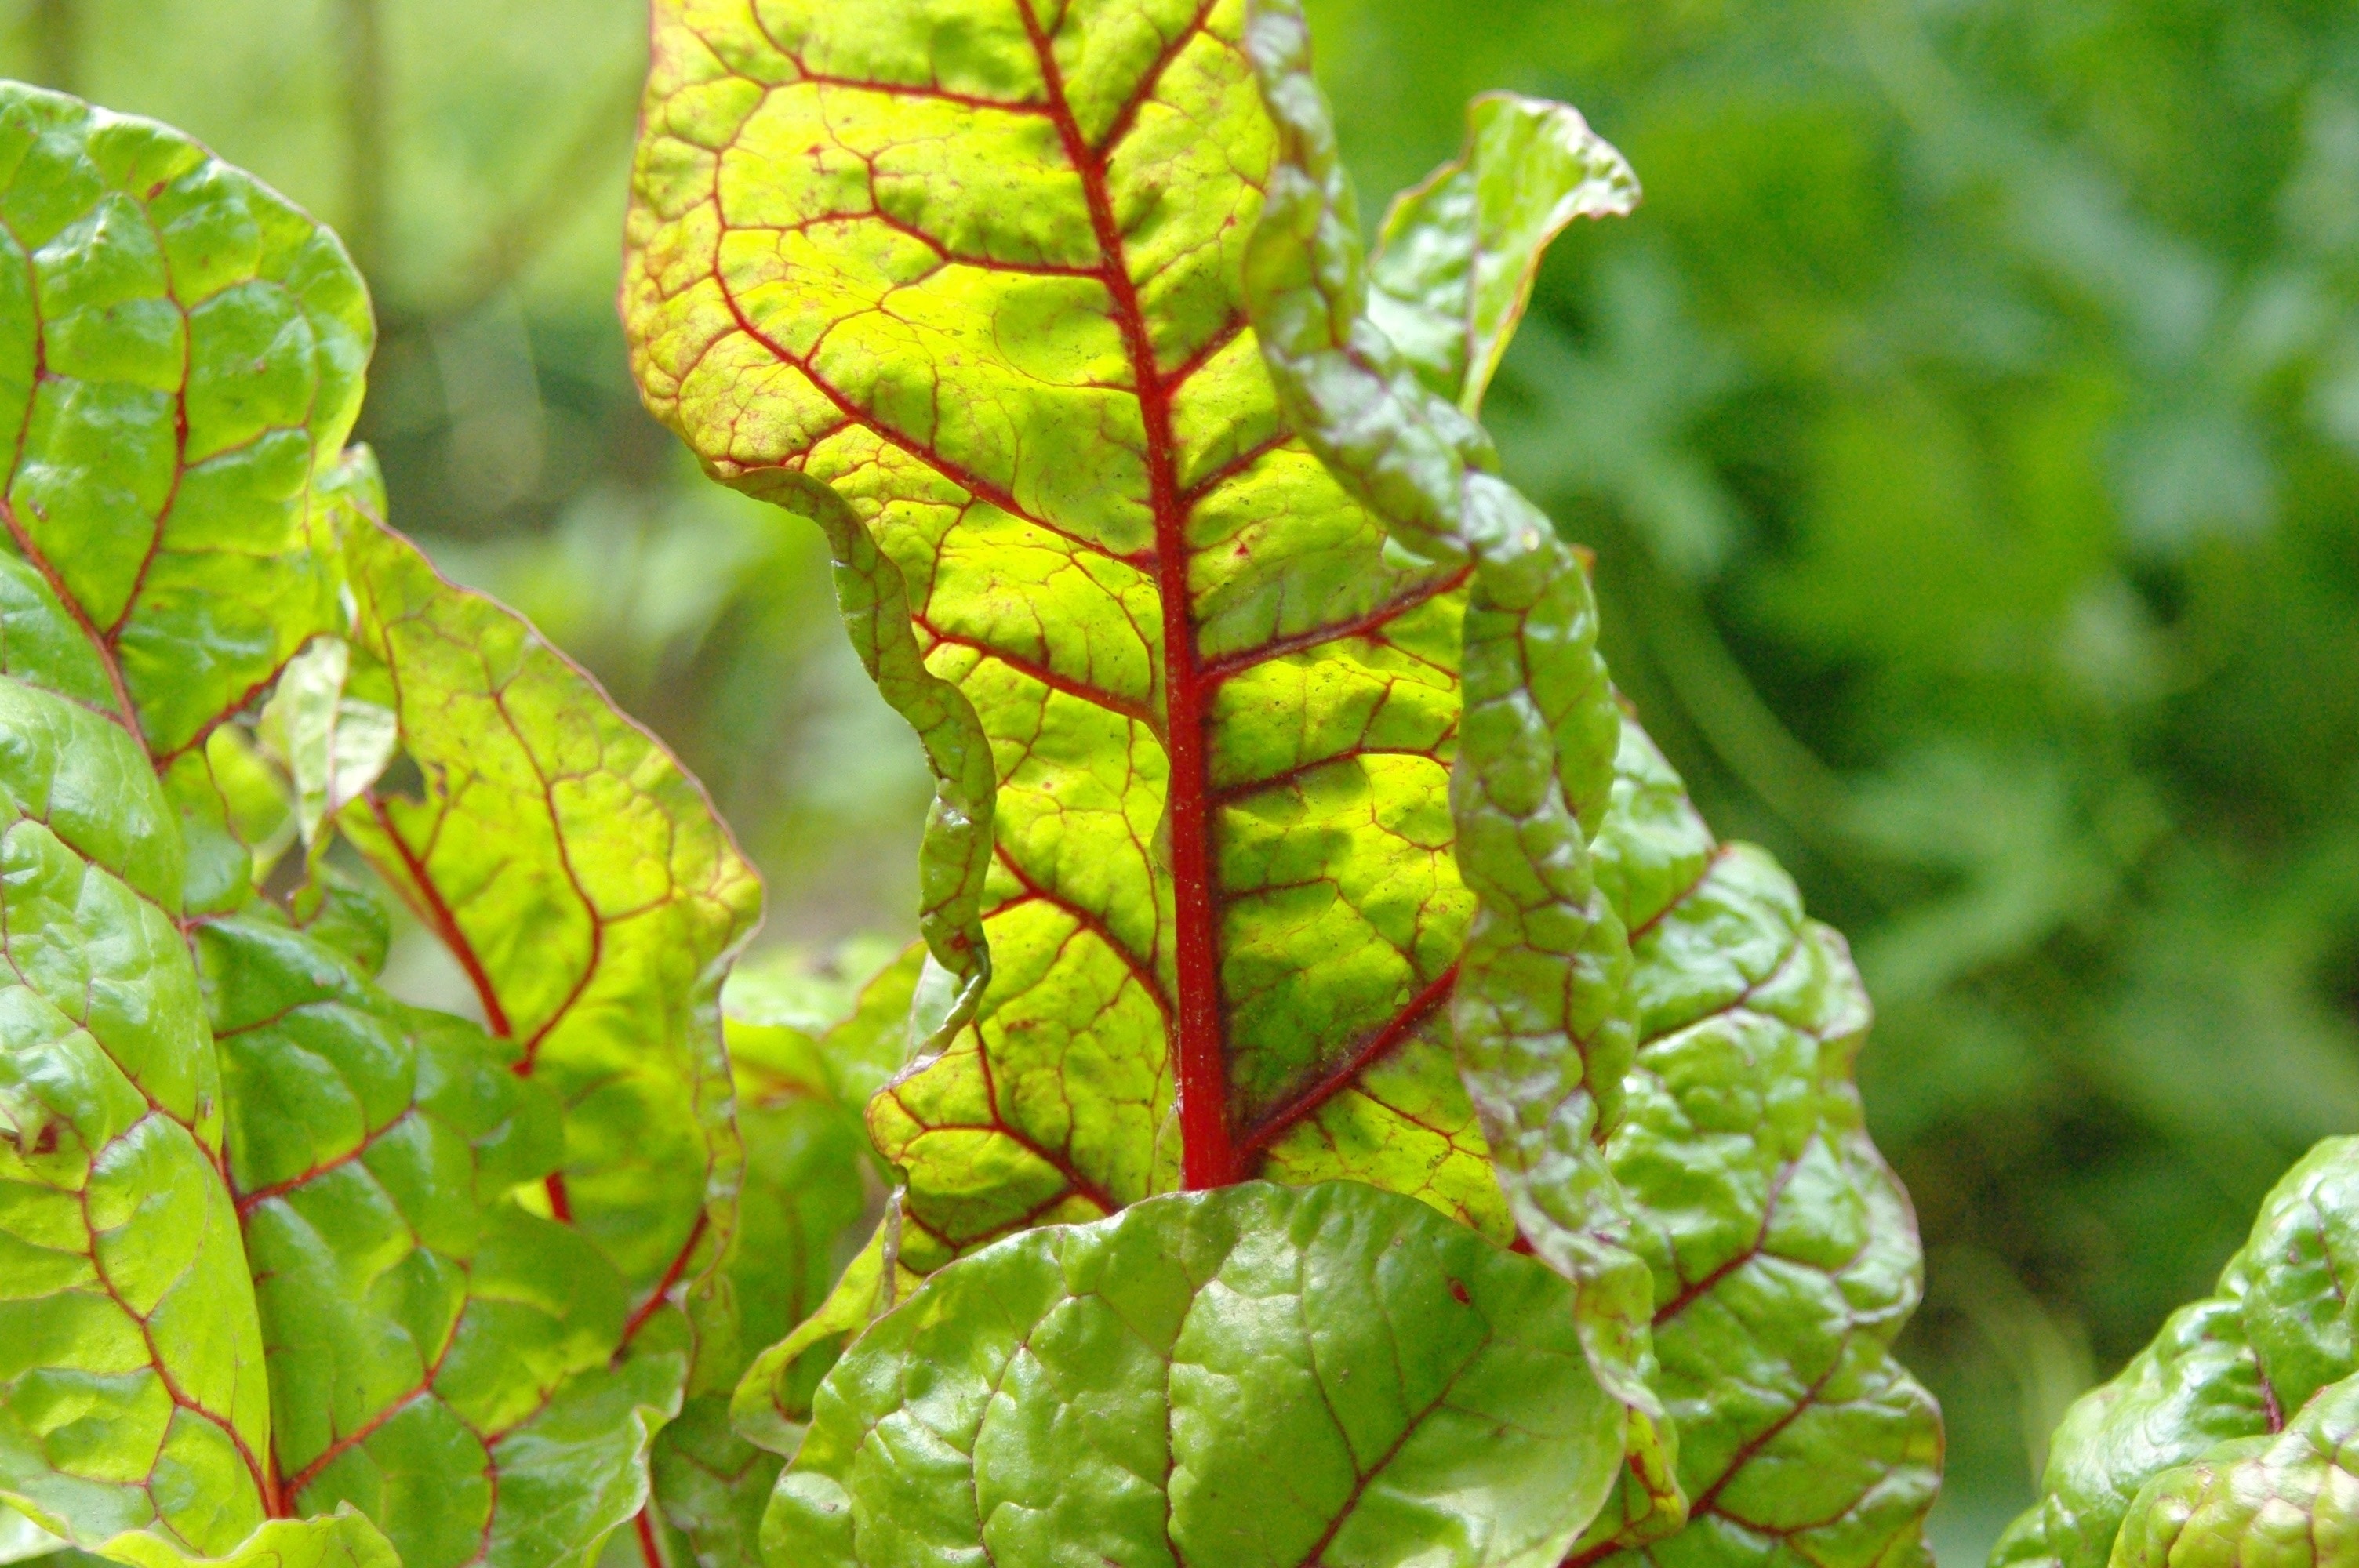 Plant, Healthy, Food, Chard, Vegetables, green color, leaf